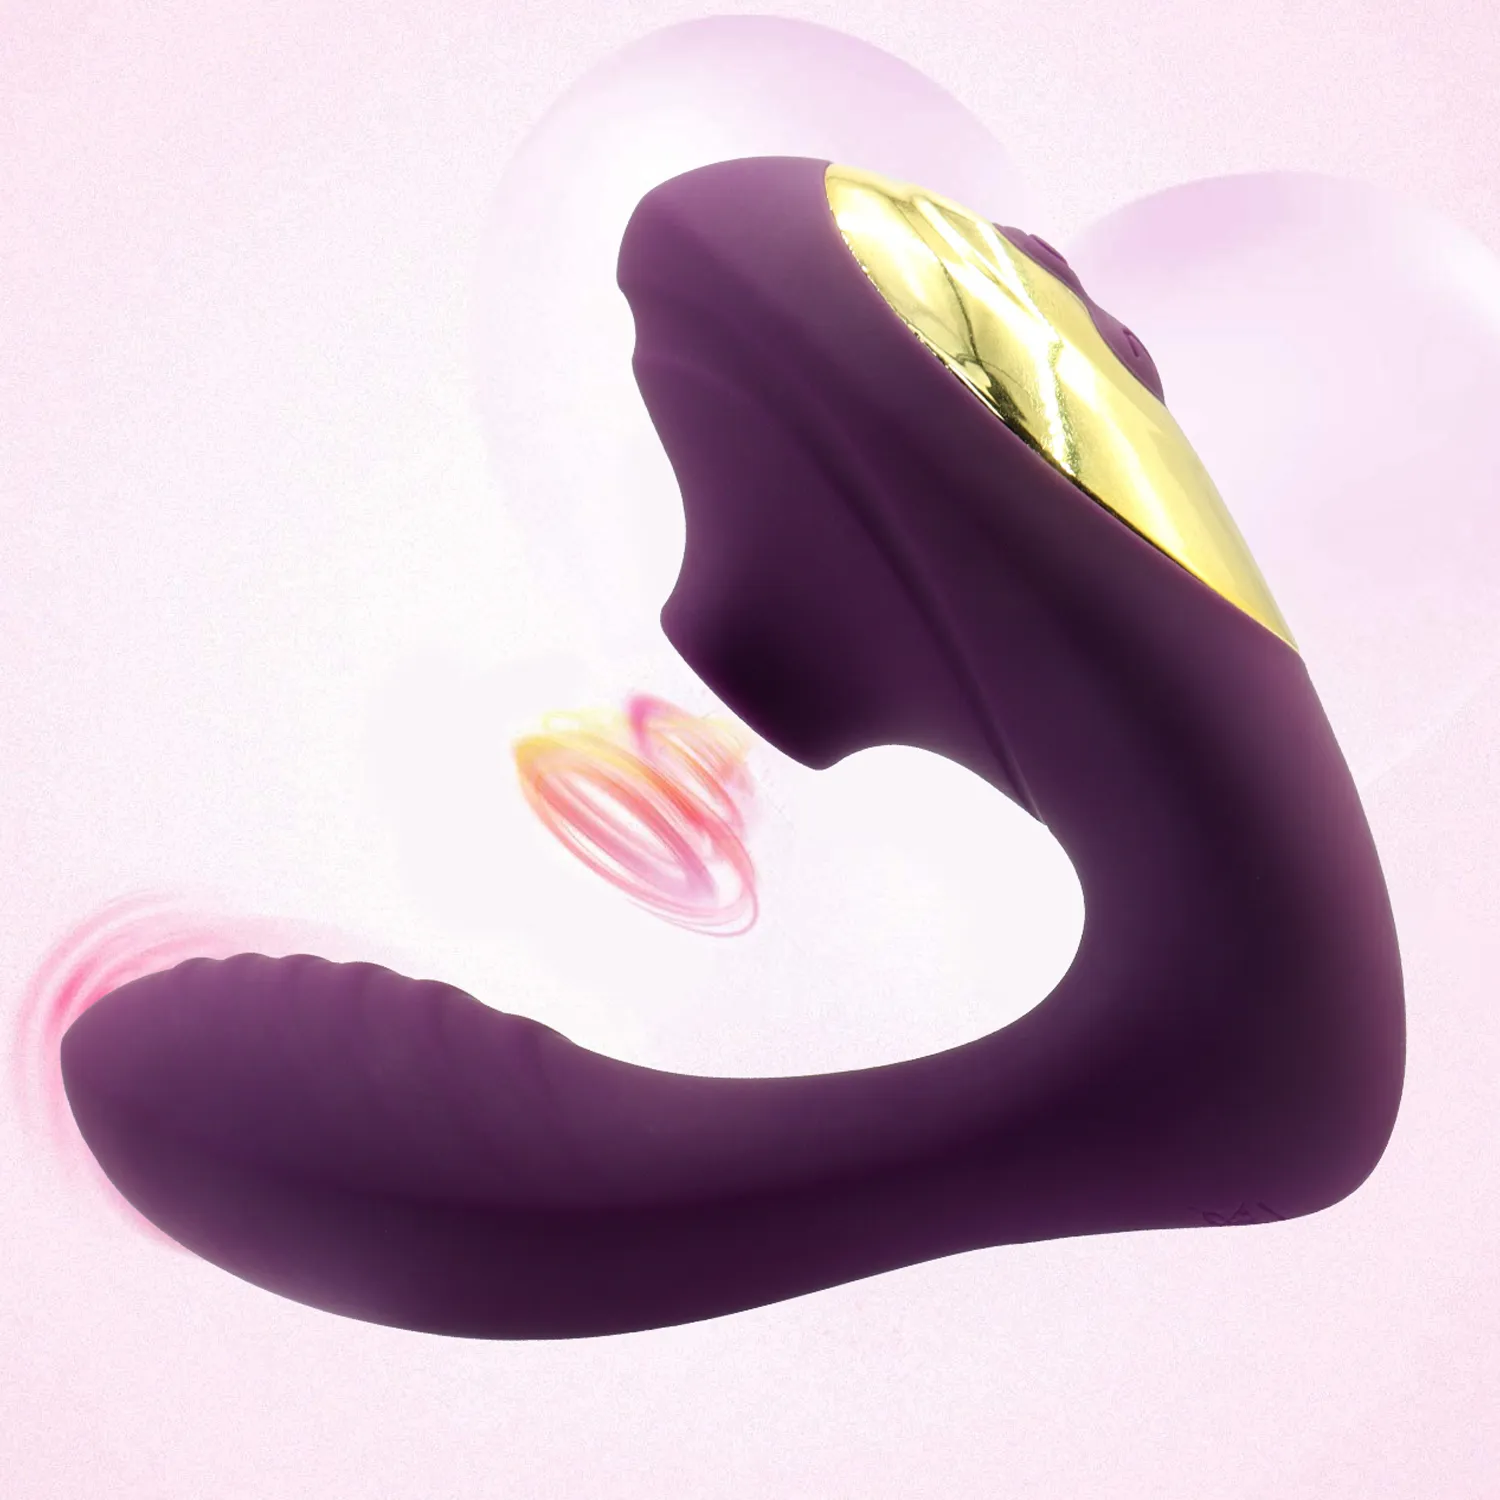 Sicuro 10 Velocità Vagina Clit Sucker Vibratore Orale sexy Aspirazione Stimolazione del clitoride Masturbazione femminile Giocattoli erotici per le donne